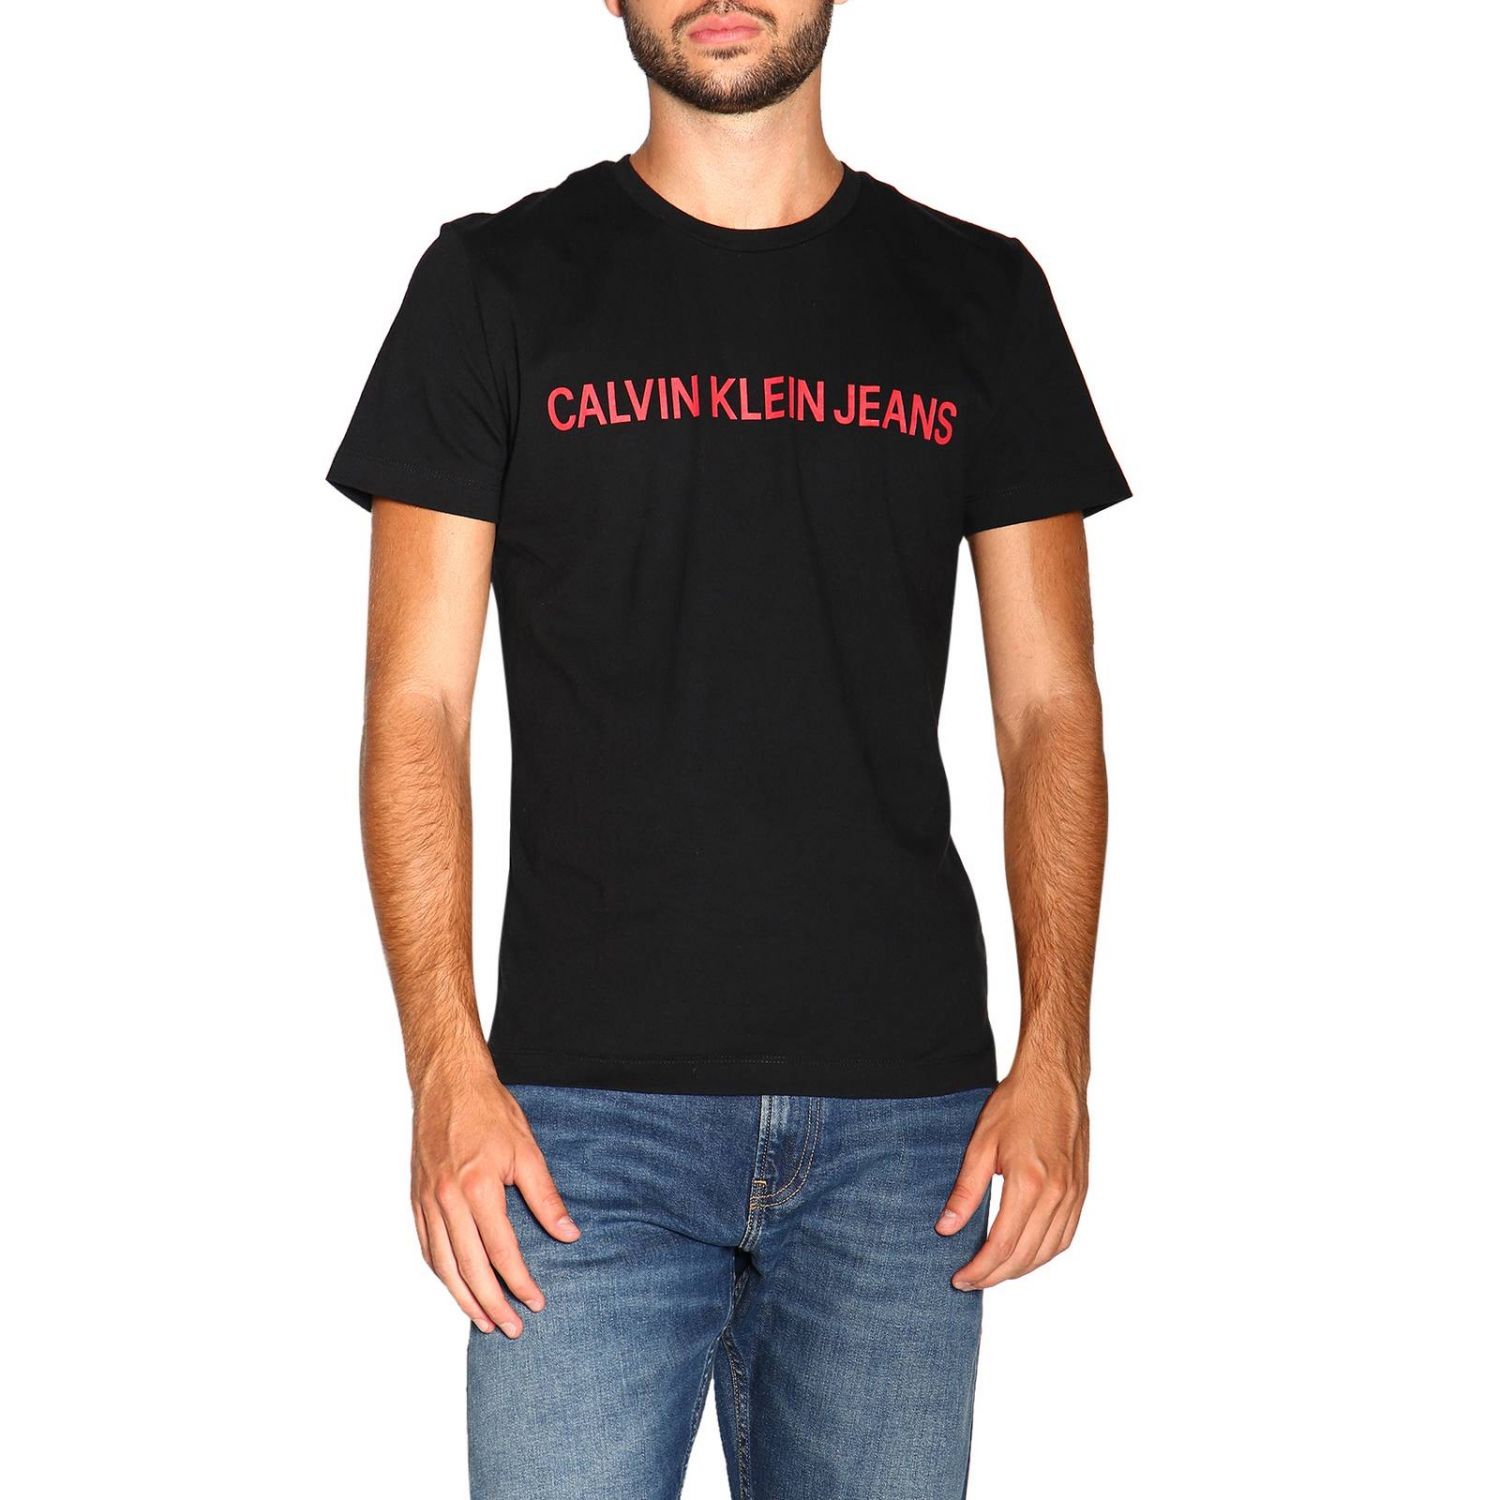 calvin klein jeans shirt mens